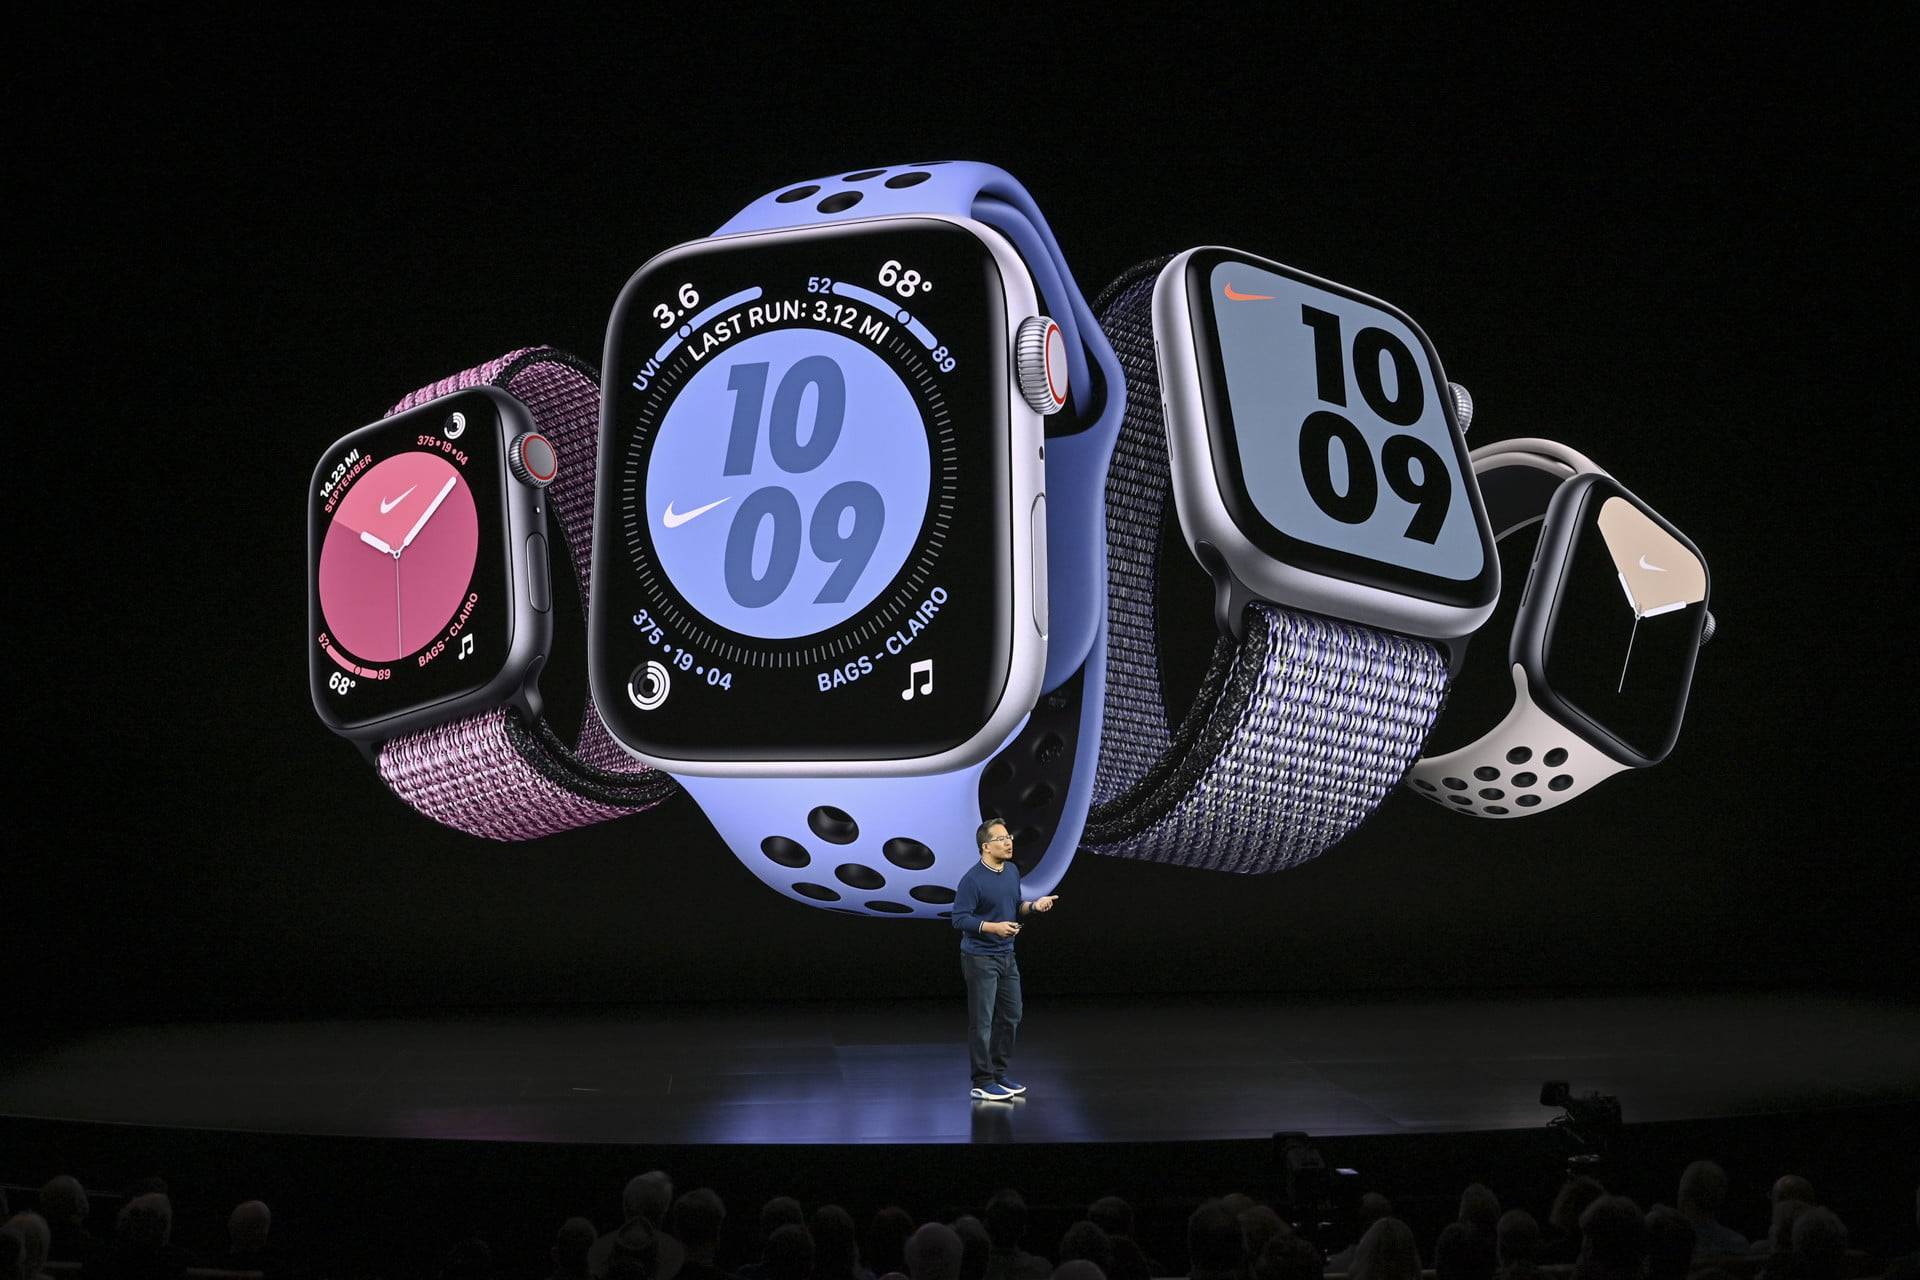 Обзор apple watch se. лучшие умные часы в 2020 году, недорого